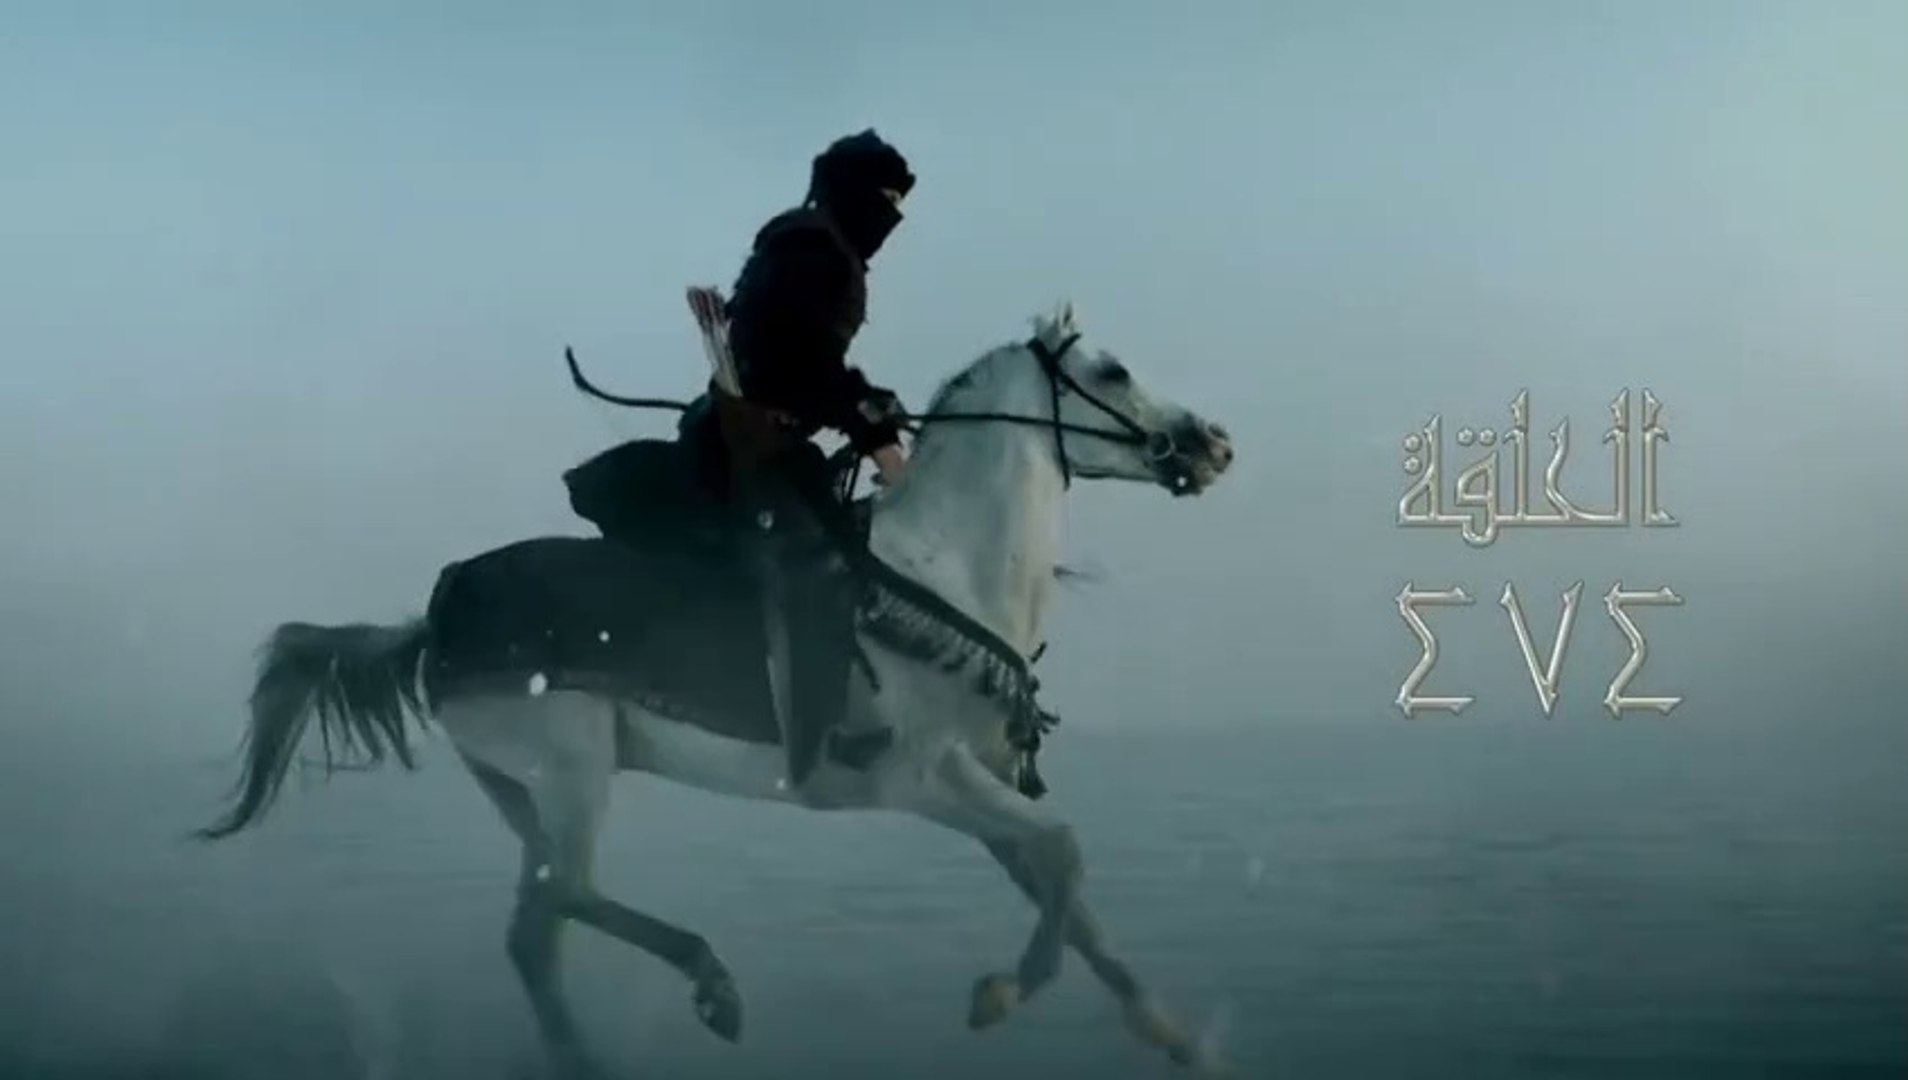 مسلسل قيامة أرطغرل الجزء الخامس الحلقة 474 مدبلجة للعربية بجودة عالية HD -  فيديو Dailymotion